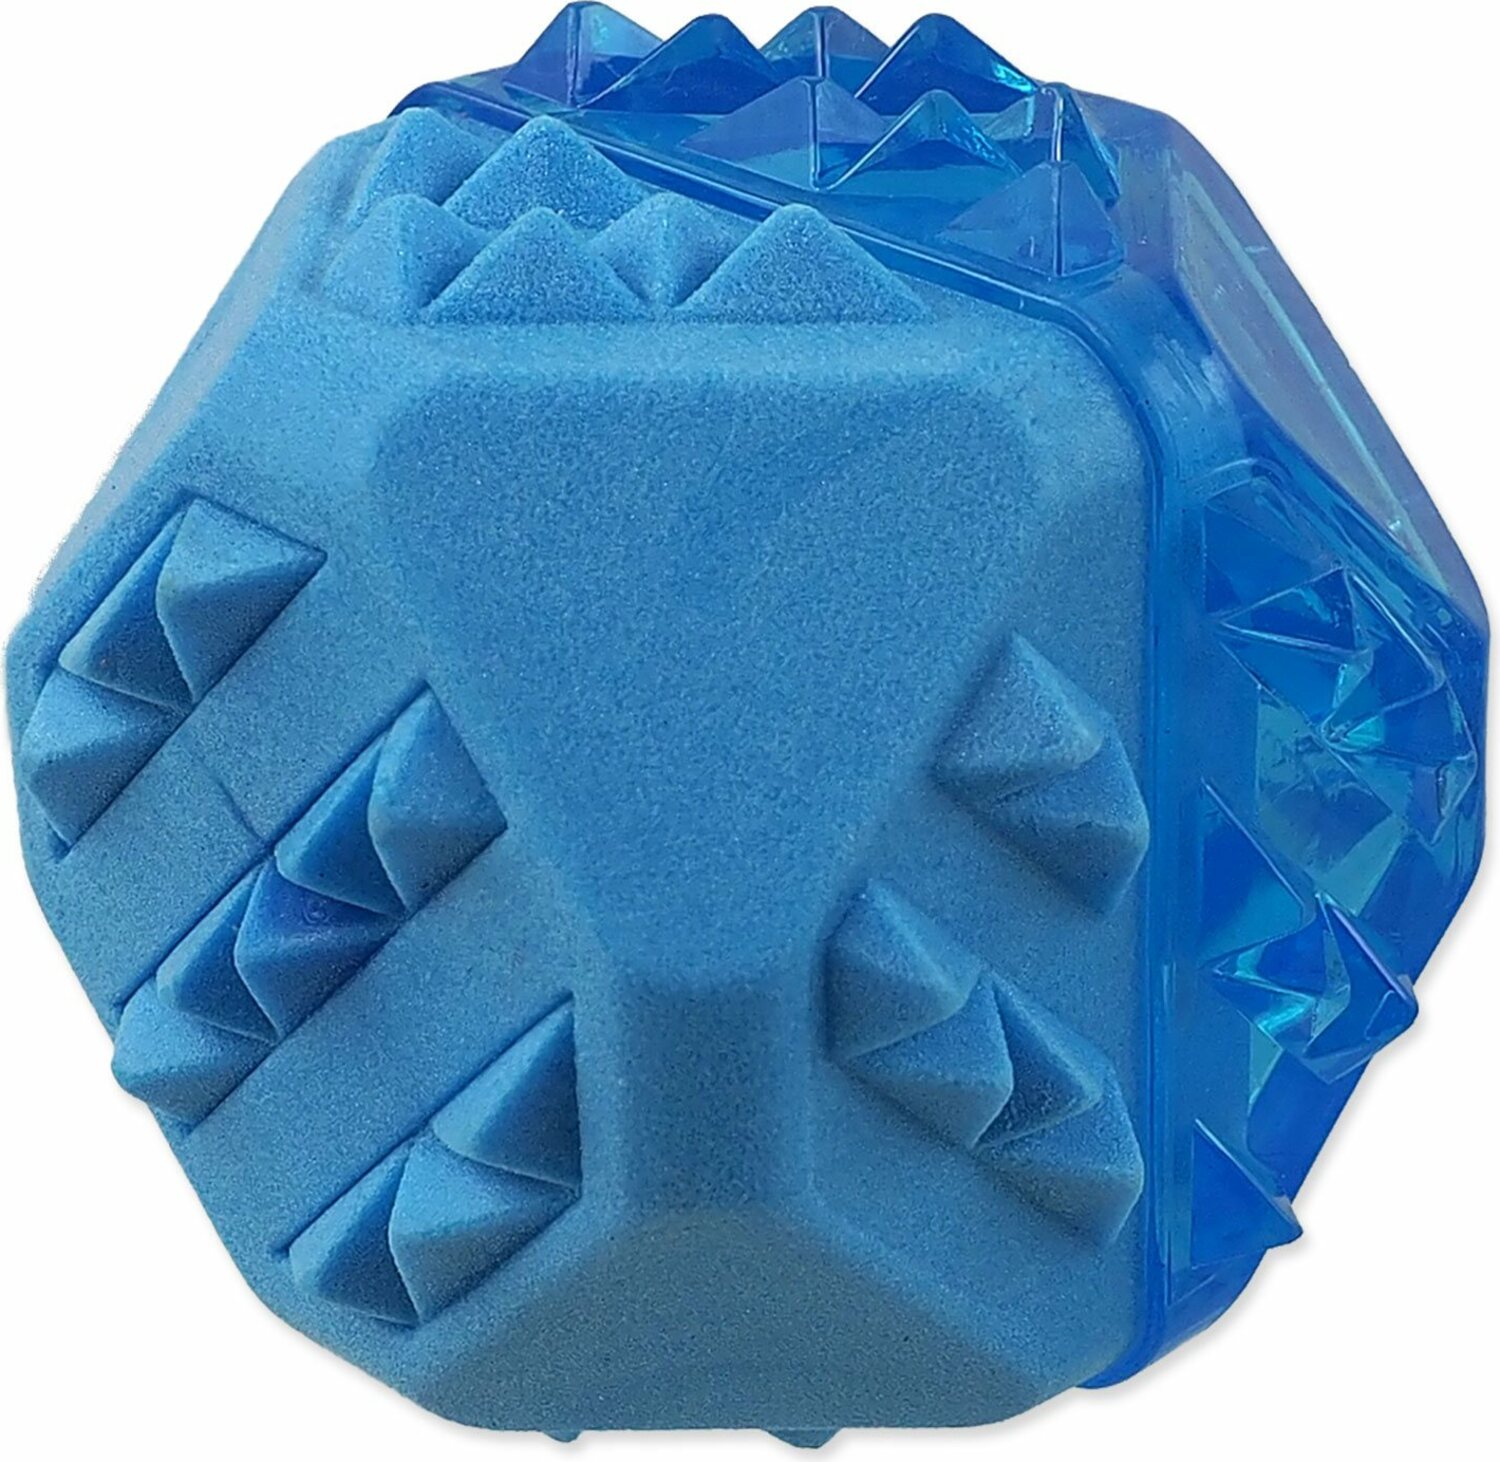 Hračka Dog Fantasy míč chladící modrý 7,7cm